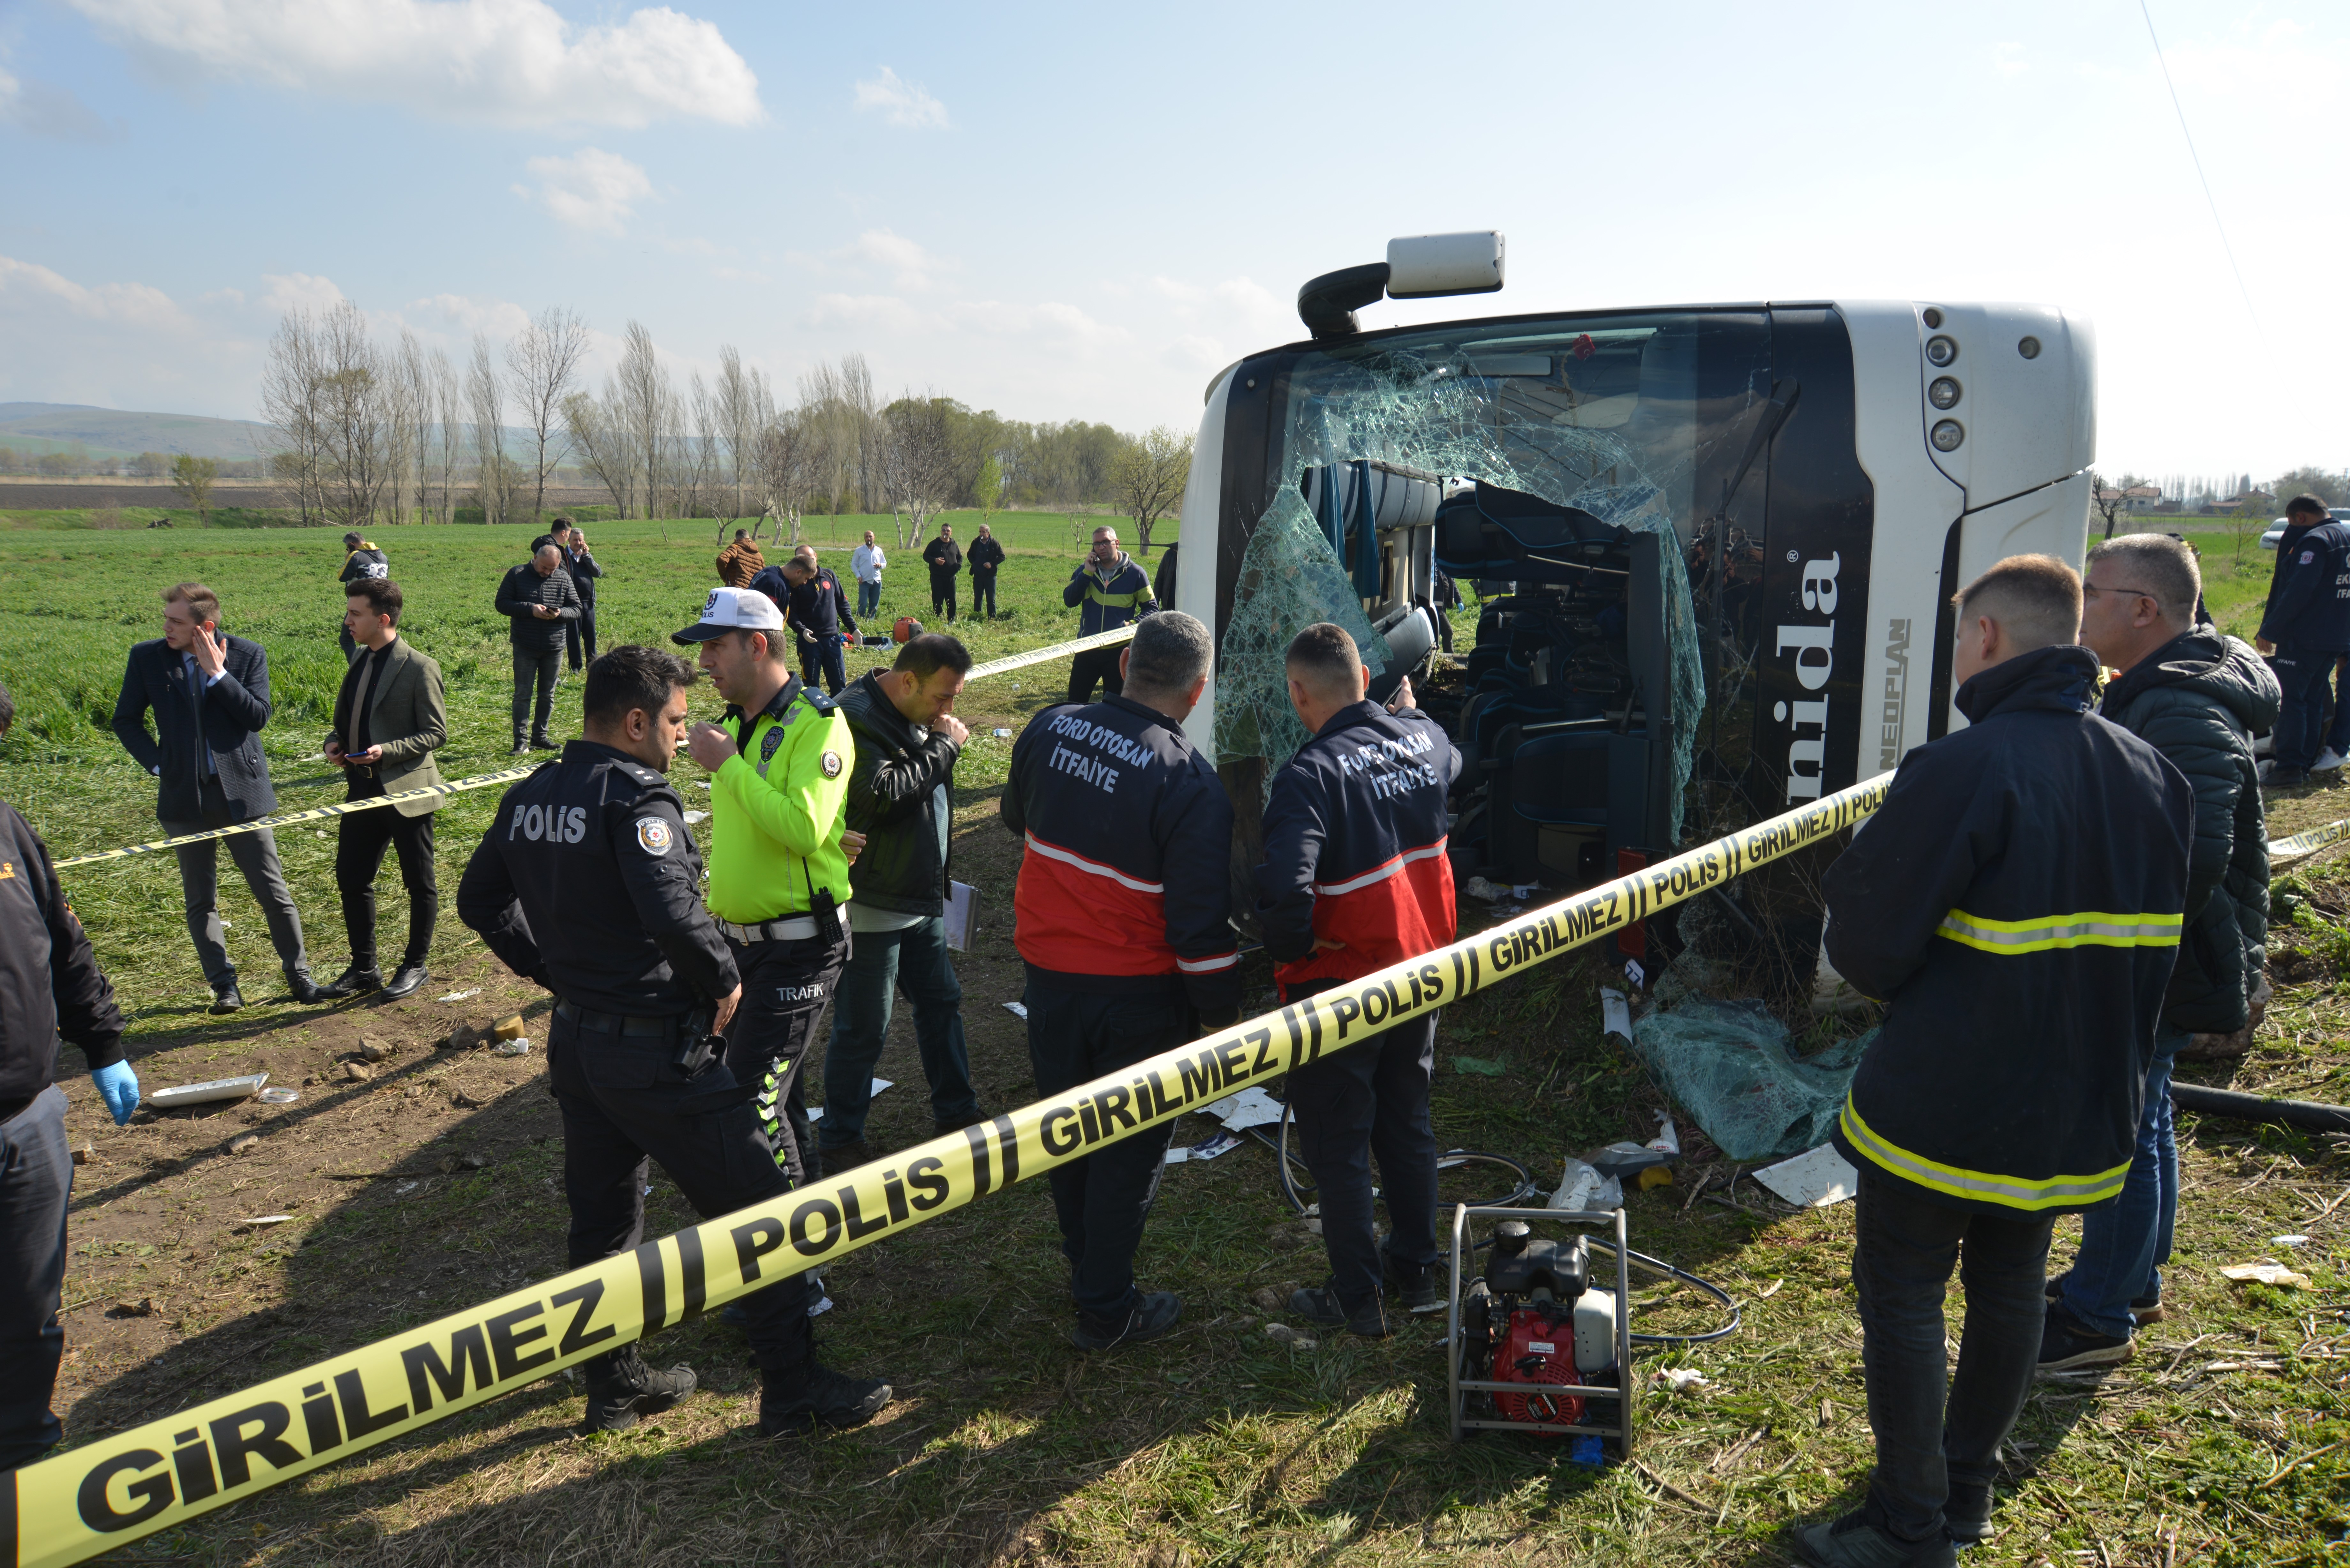 - Eskişehir’de bir fabrika işçilerini taşıyan otobüsün yoldan çıkarak şarampole yuvarlanması sonucu meydana gelen trafik kazasında ilk belirlemelere göre 3 kişi hayatını kaybederken 31 kişi yaralandı.